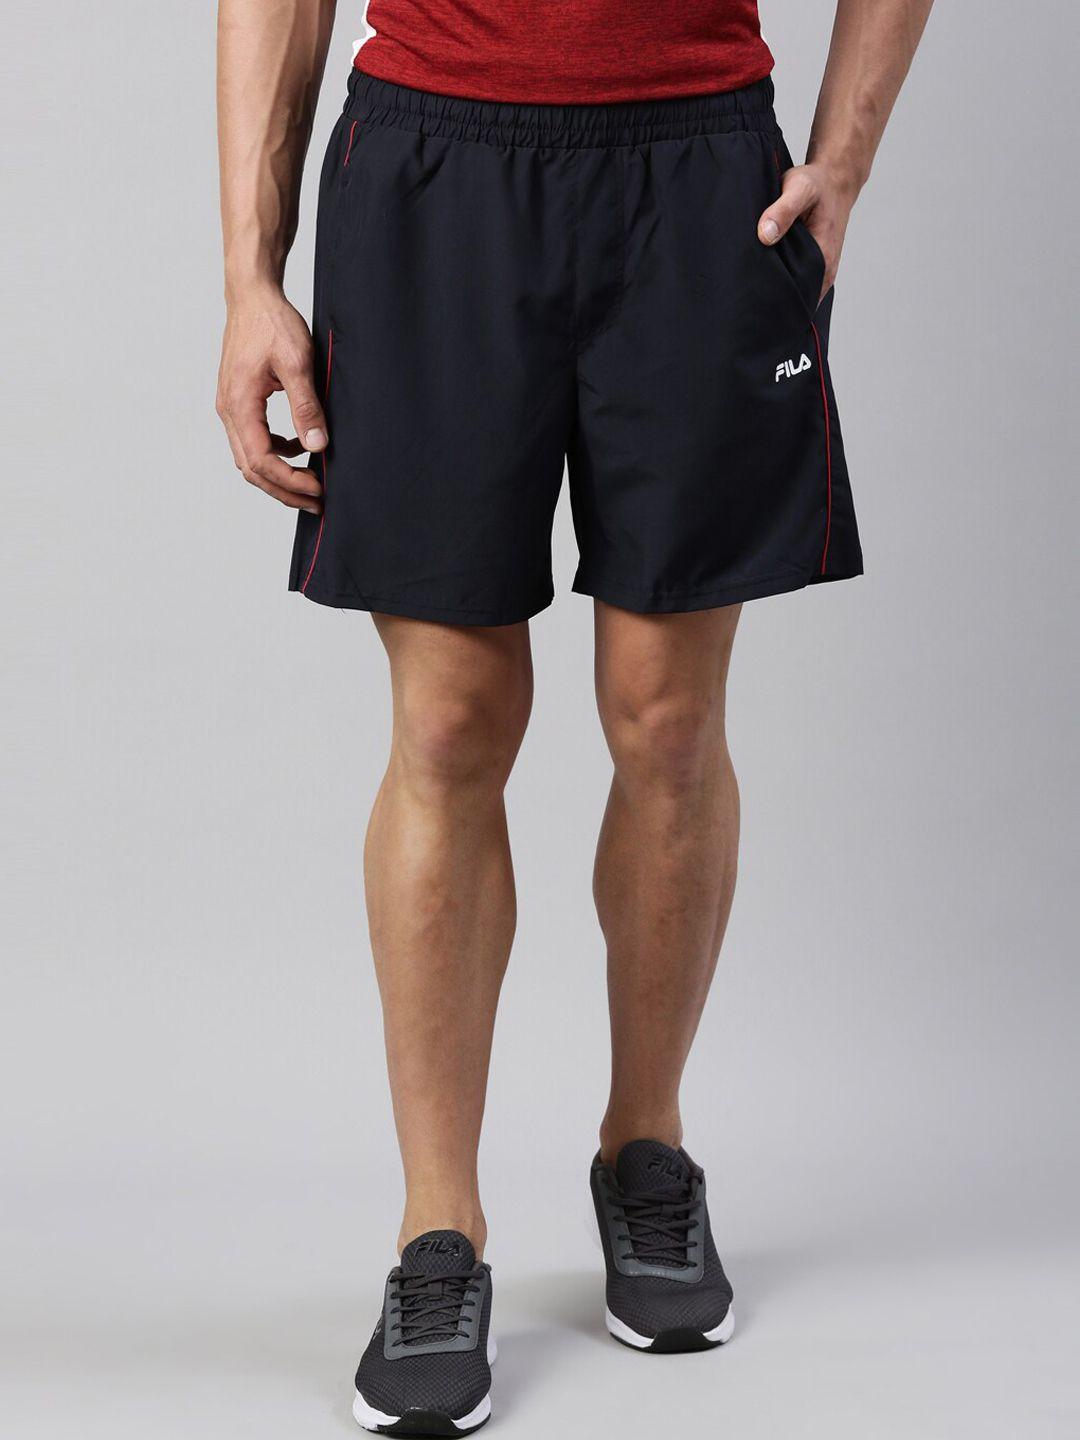 fila-men-black-cotton-training-sports-shorts